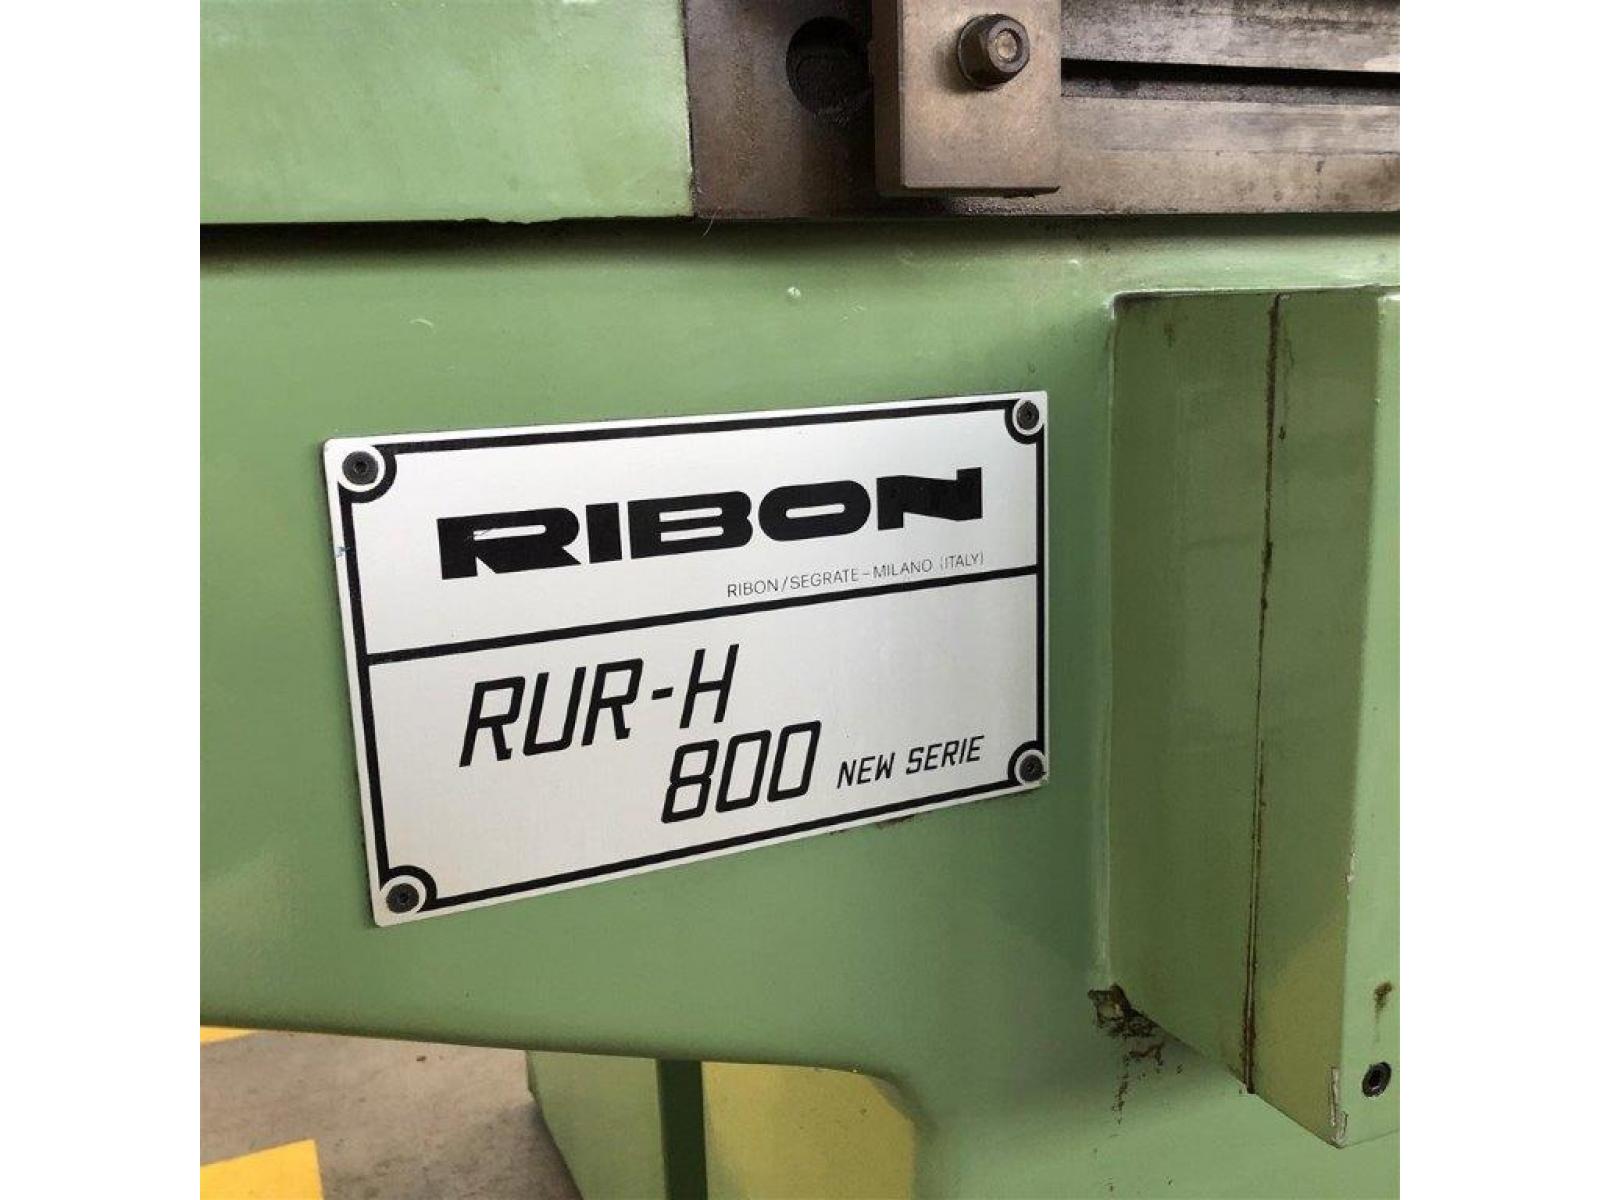 Rettificatrice Universale usata Marca: RIBON Modello RUR-H 800 NEW SERIE